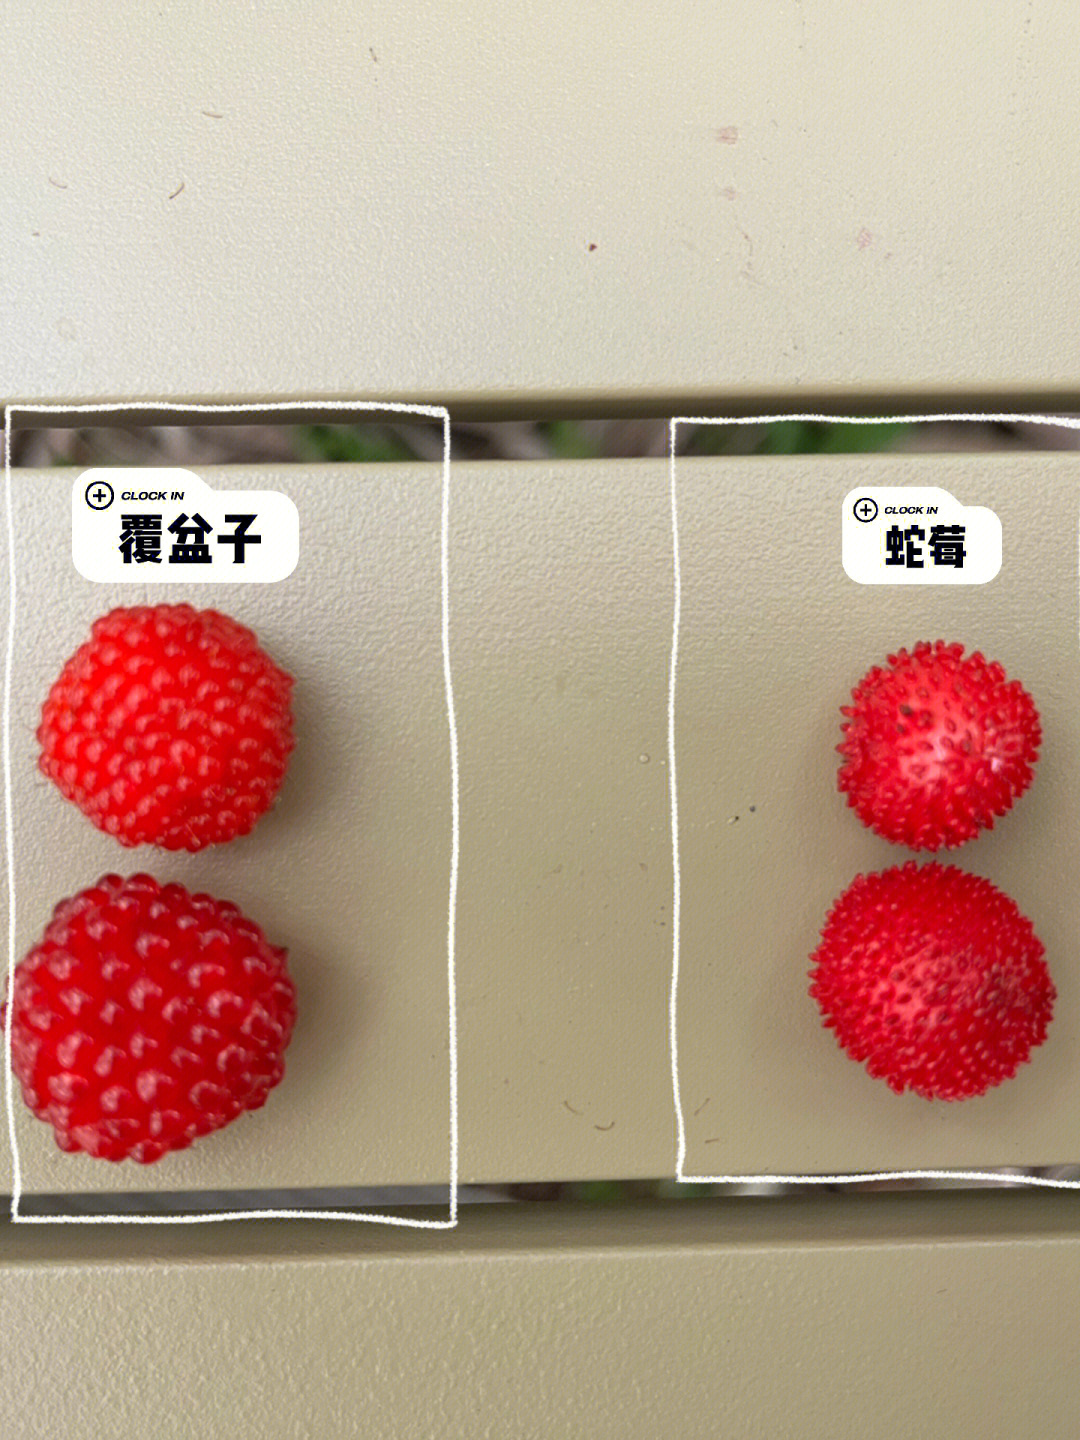 五叶蛇莓与三叶蛇莓图片